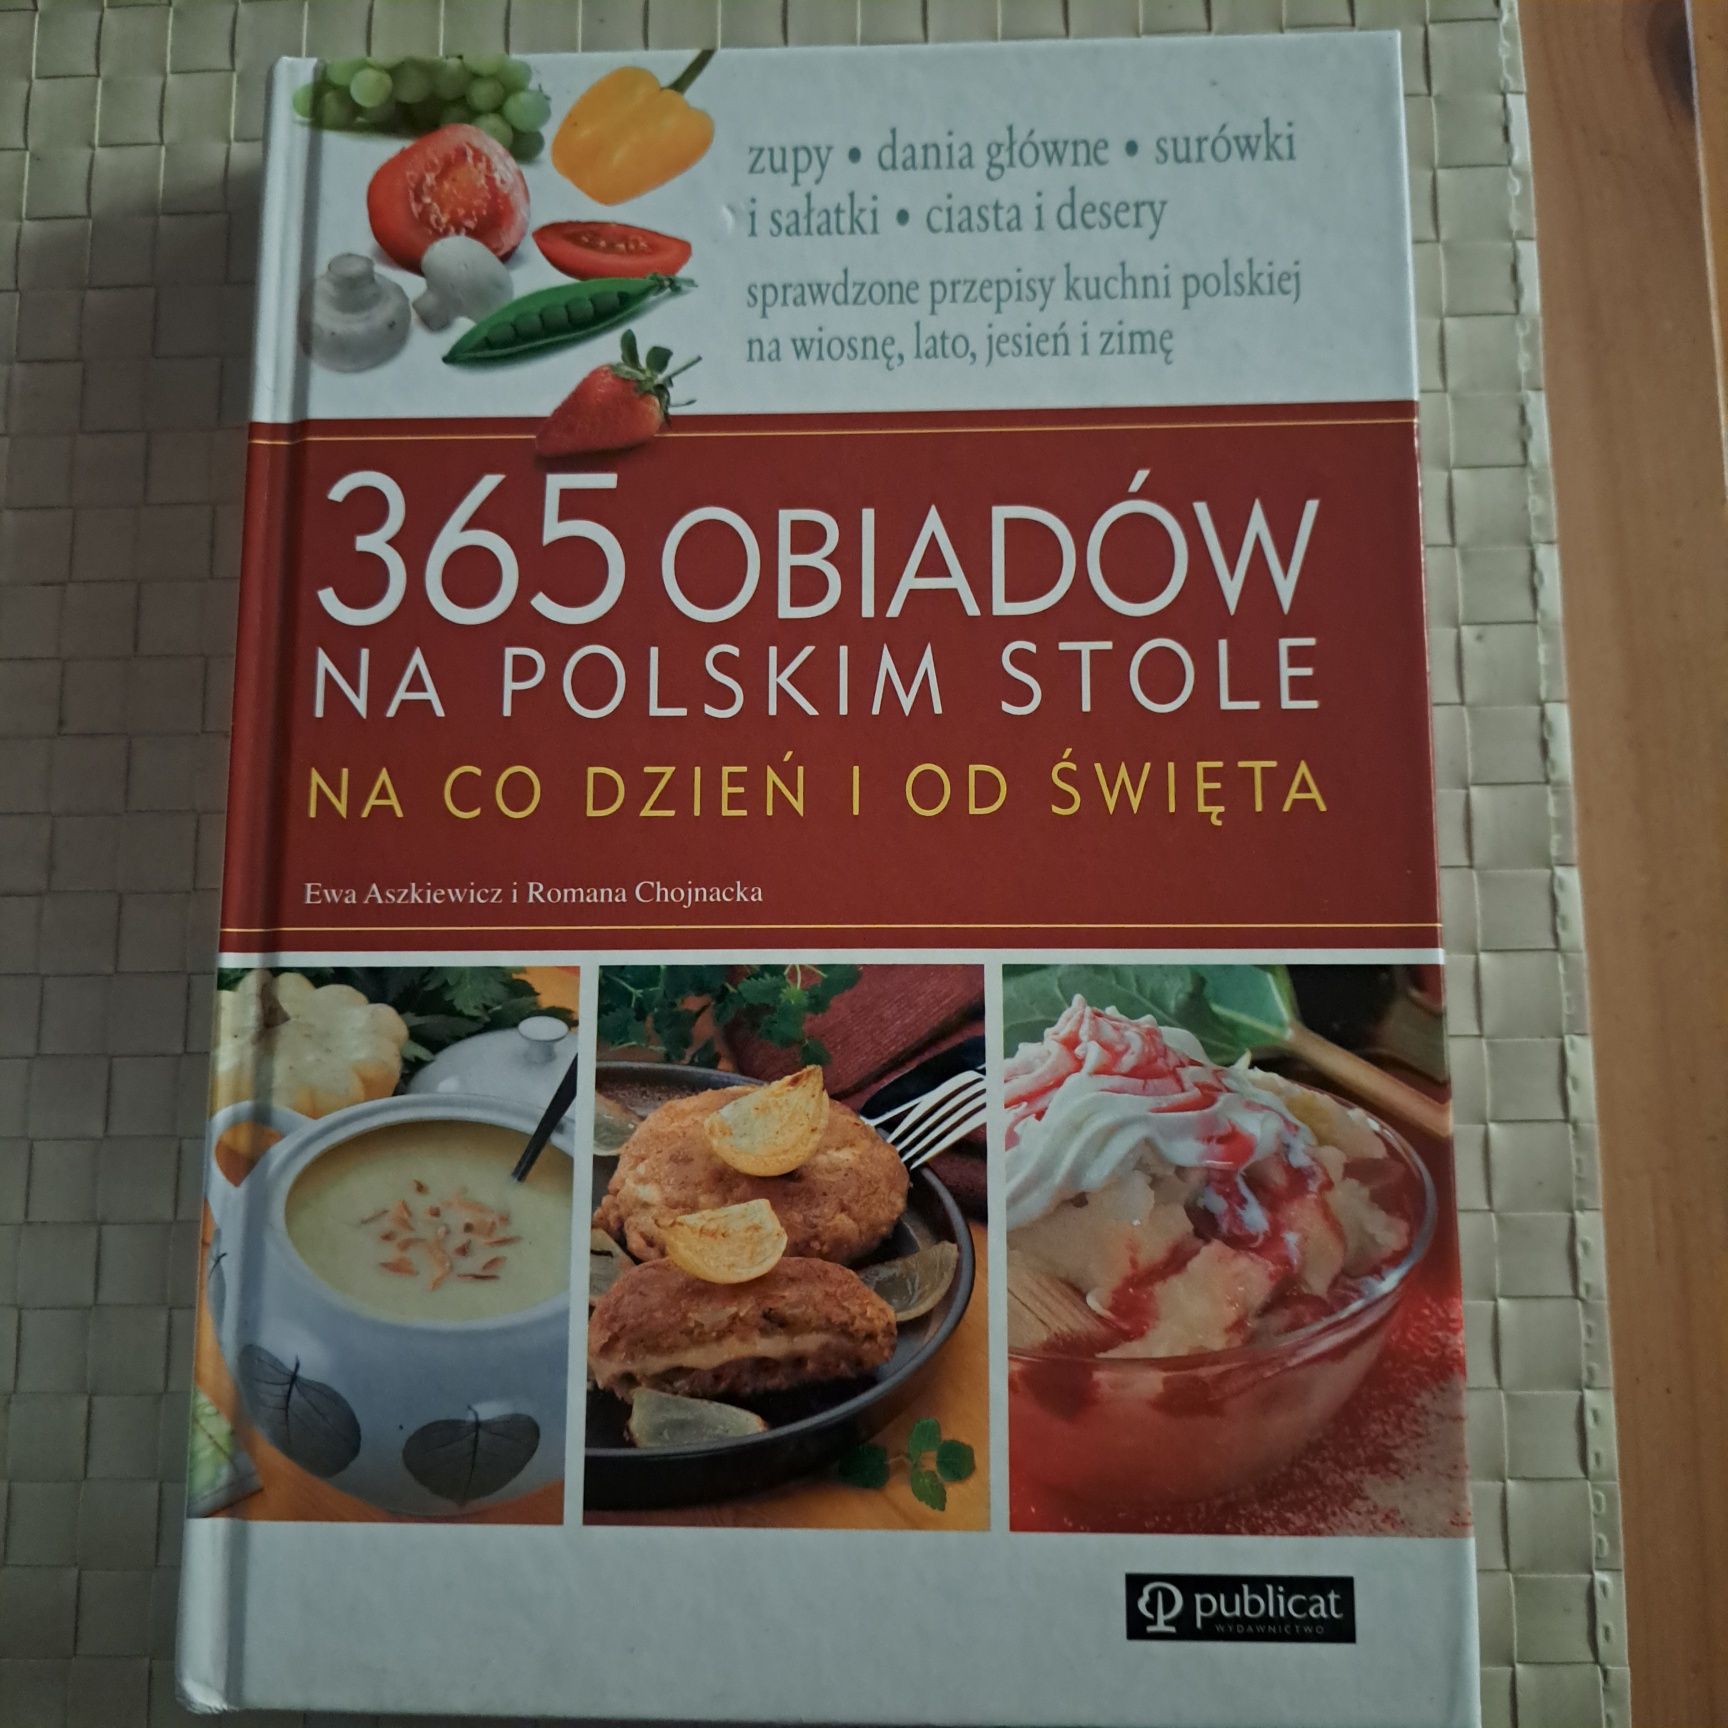 365 obiadów na polskim stole na co dzień I od święta